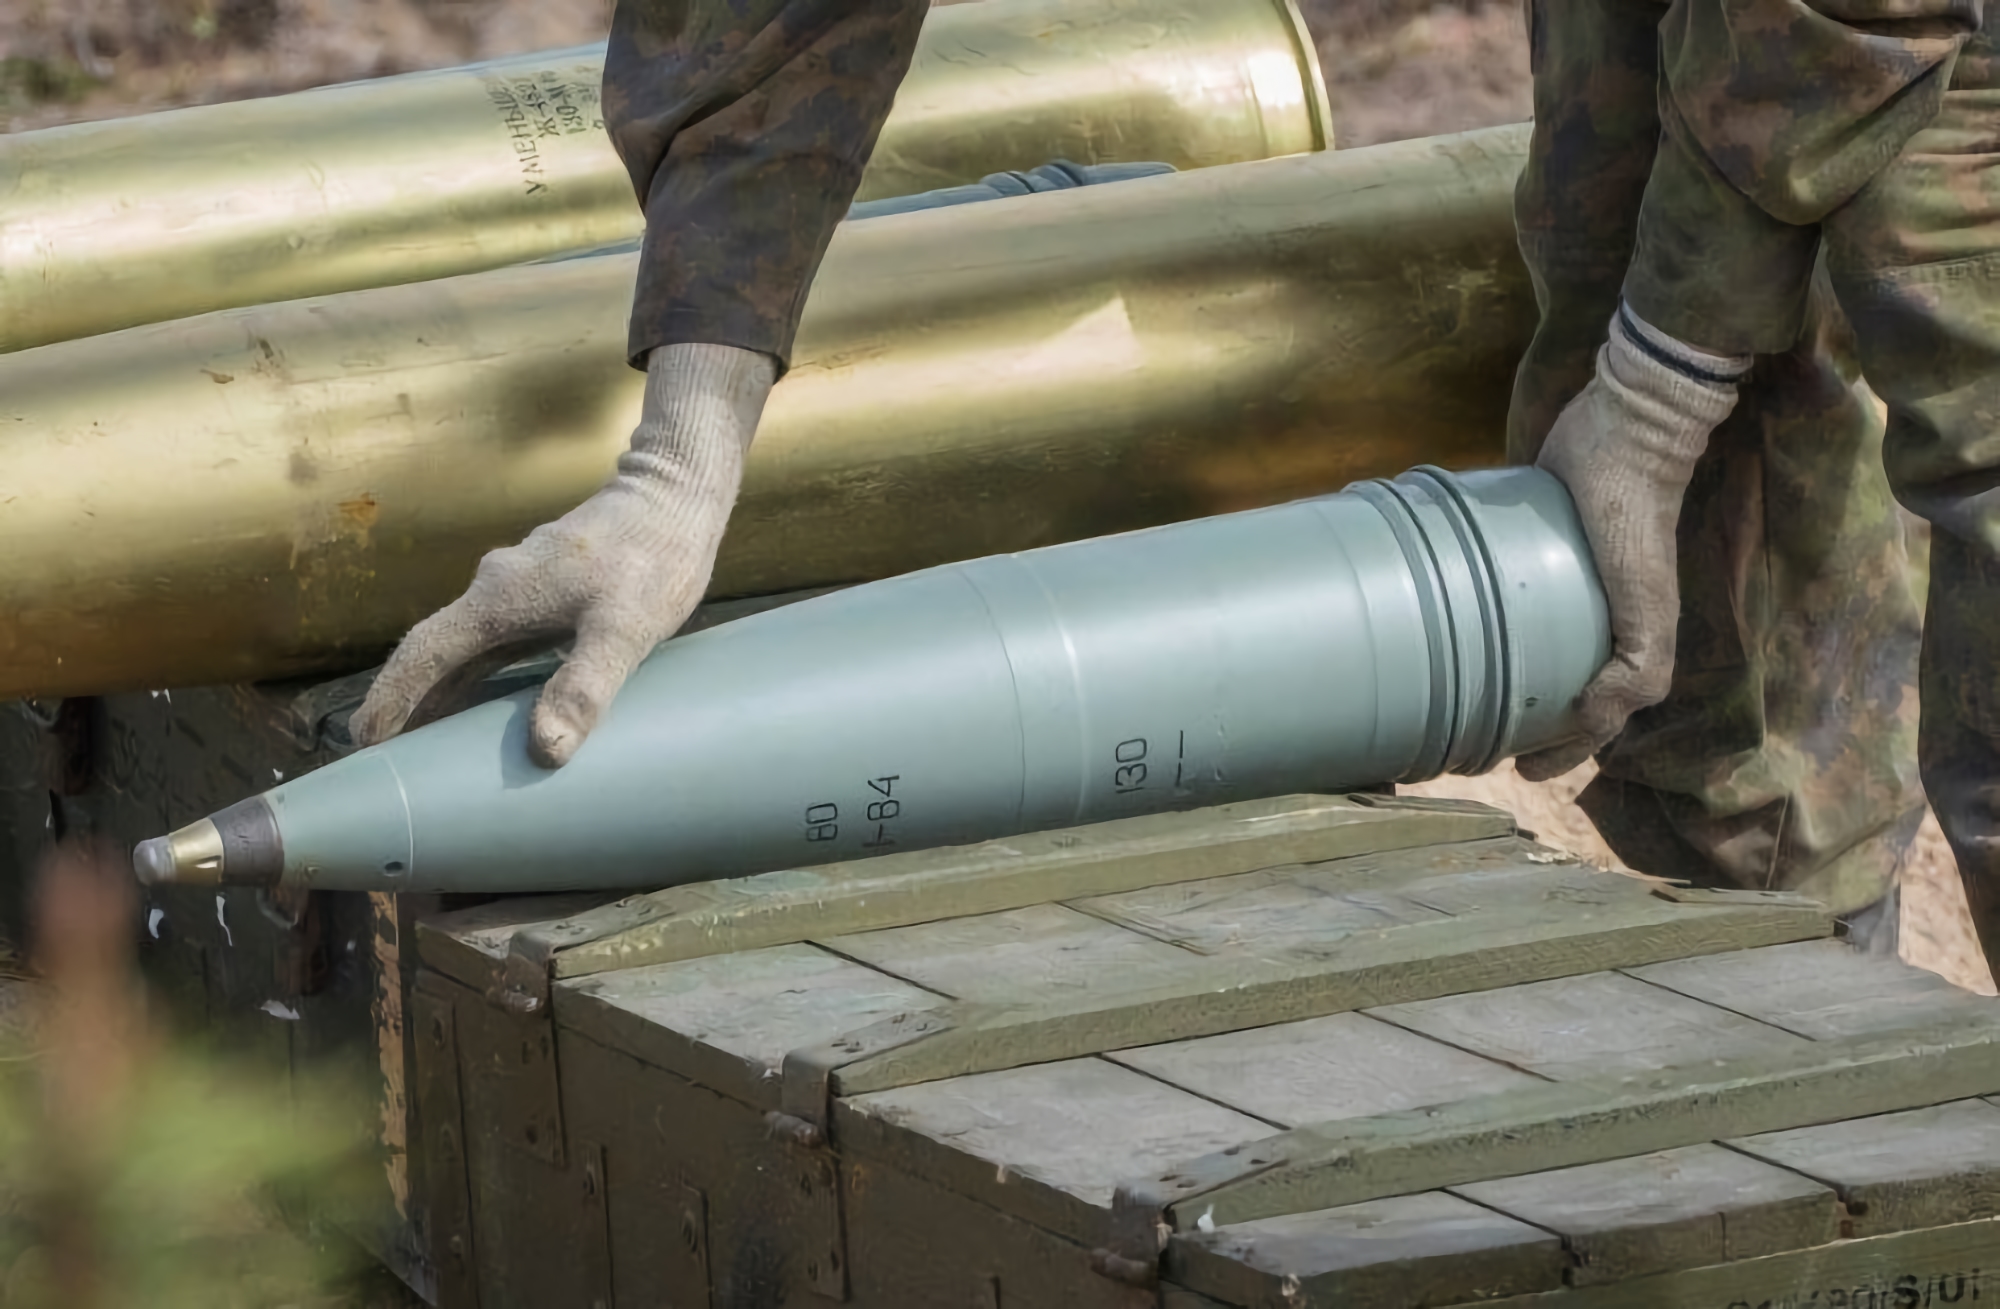 Ucrania, junto con un socio, está construyendo una planta para producir munición estándar de la OTAN